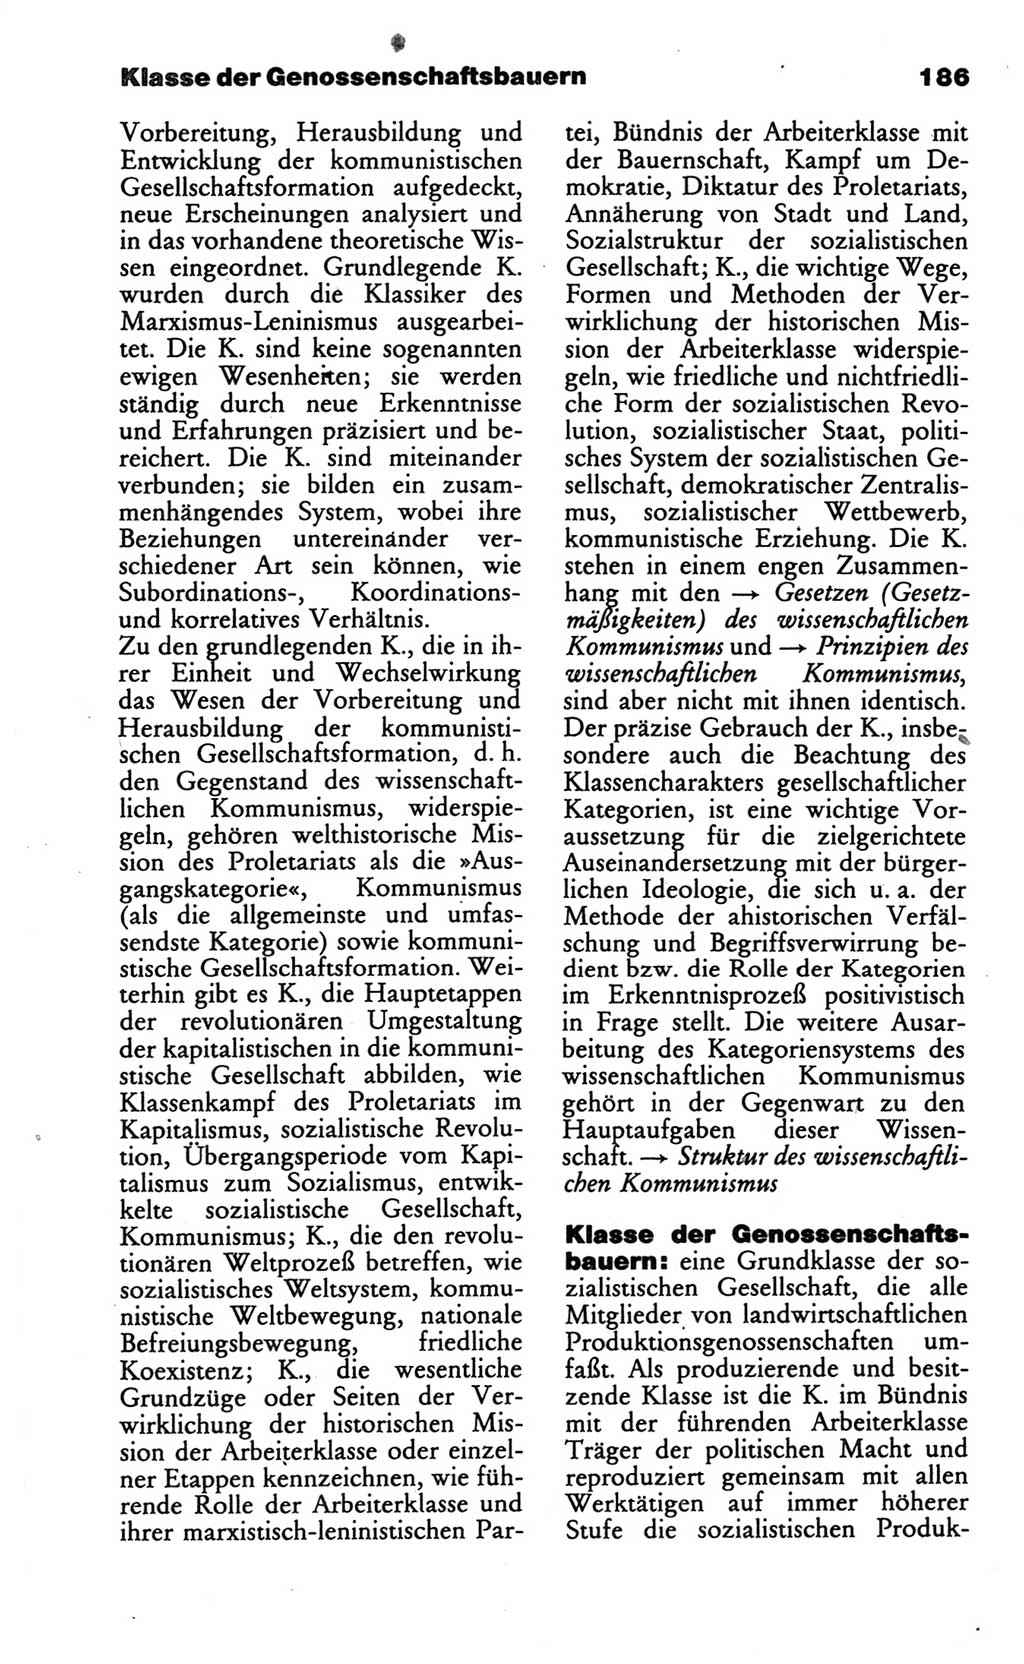 Wörterbuch des wissenschaftlichen Kommunismus [Deutsche Demokratische Republik (DDR)] 1986, Seite 186 (Wb. wiss. Komm. DDR 1986, S. 186)